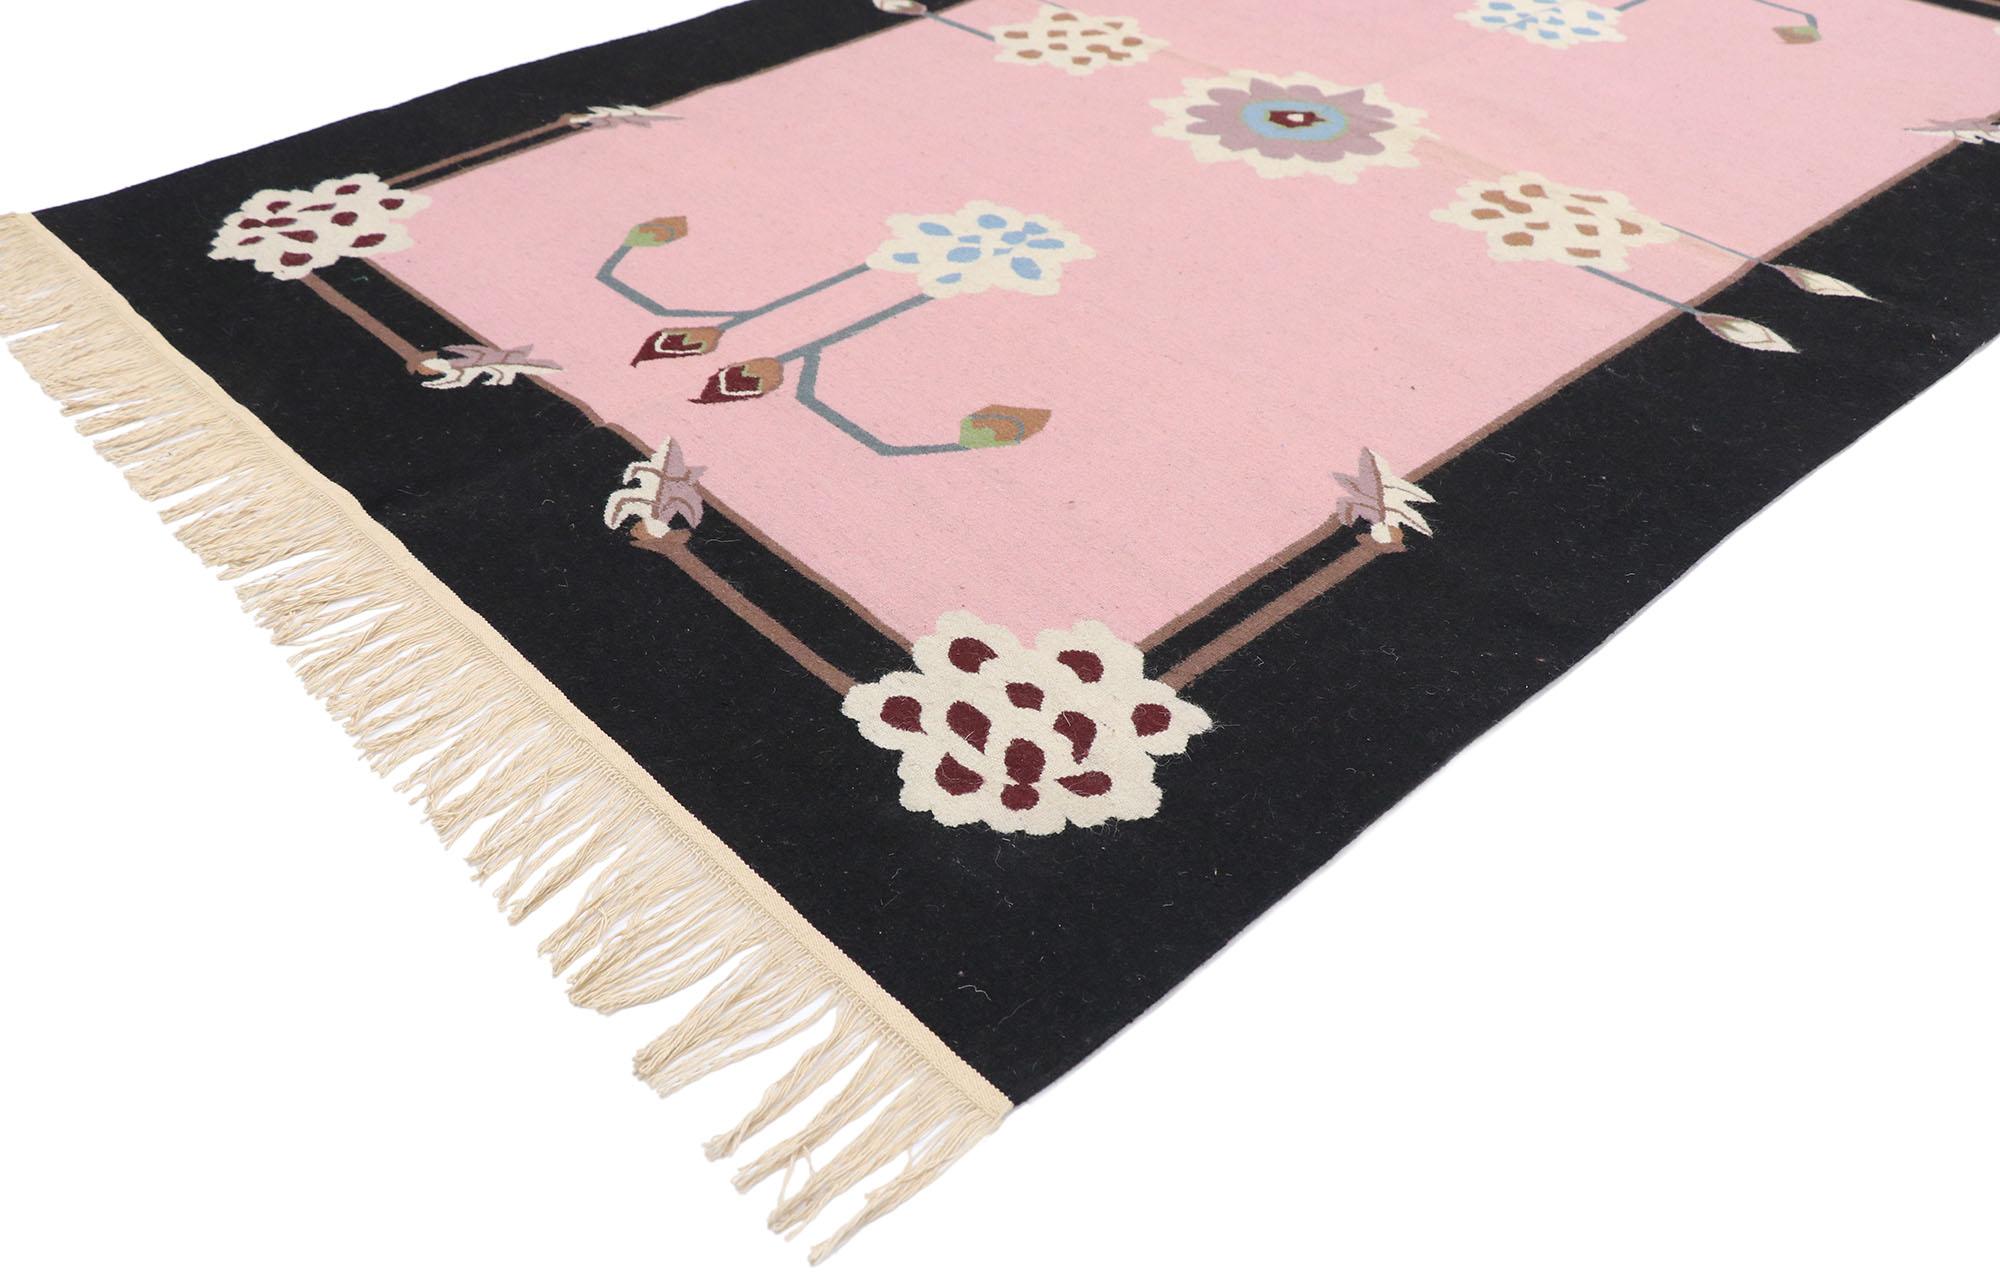 77814 vintage Chinese Floral Kilim rug 04'02 x 06'03. Ce tapis kilim chinois vintage en laine, tissé à la main, présente un champ et une bordure colorés, ornés de superbes motifs floraux. Quatre chrysanthèmes et bourgeons flottent élégamment dans le